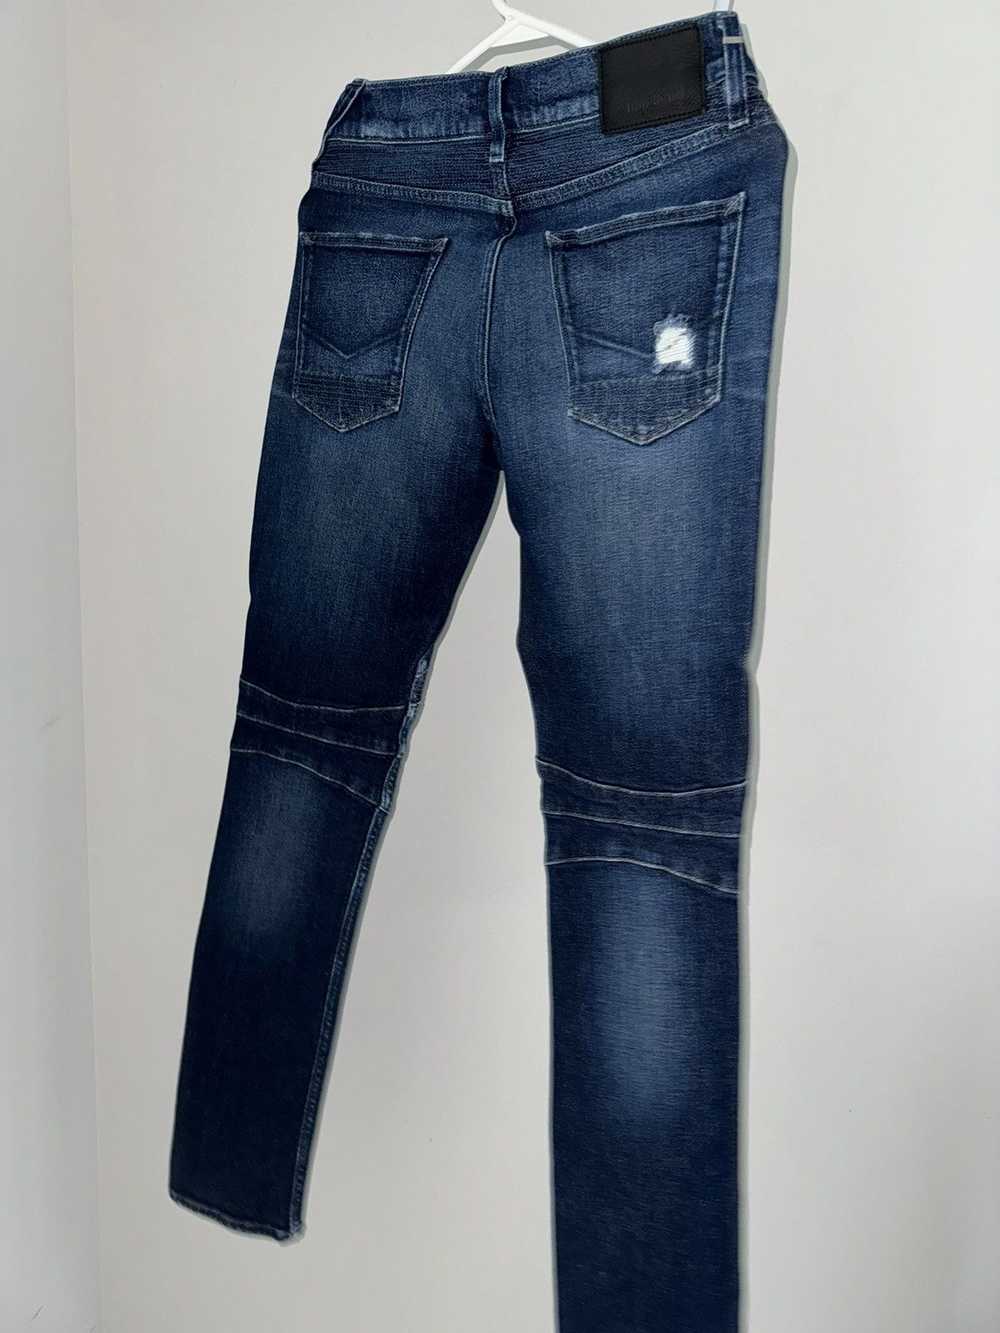 Hudson Hudson jeans - image 2